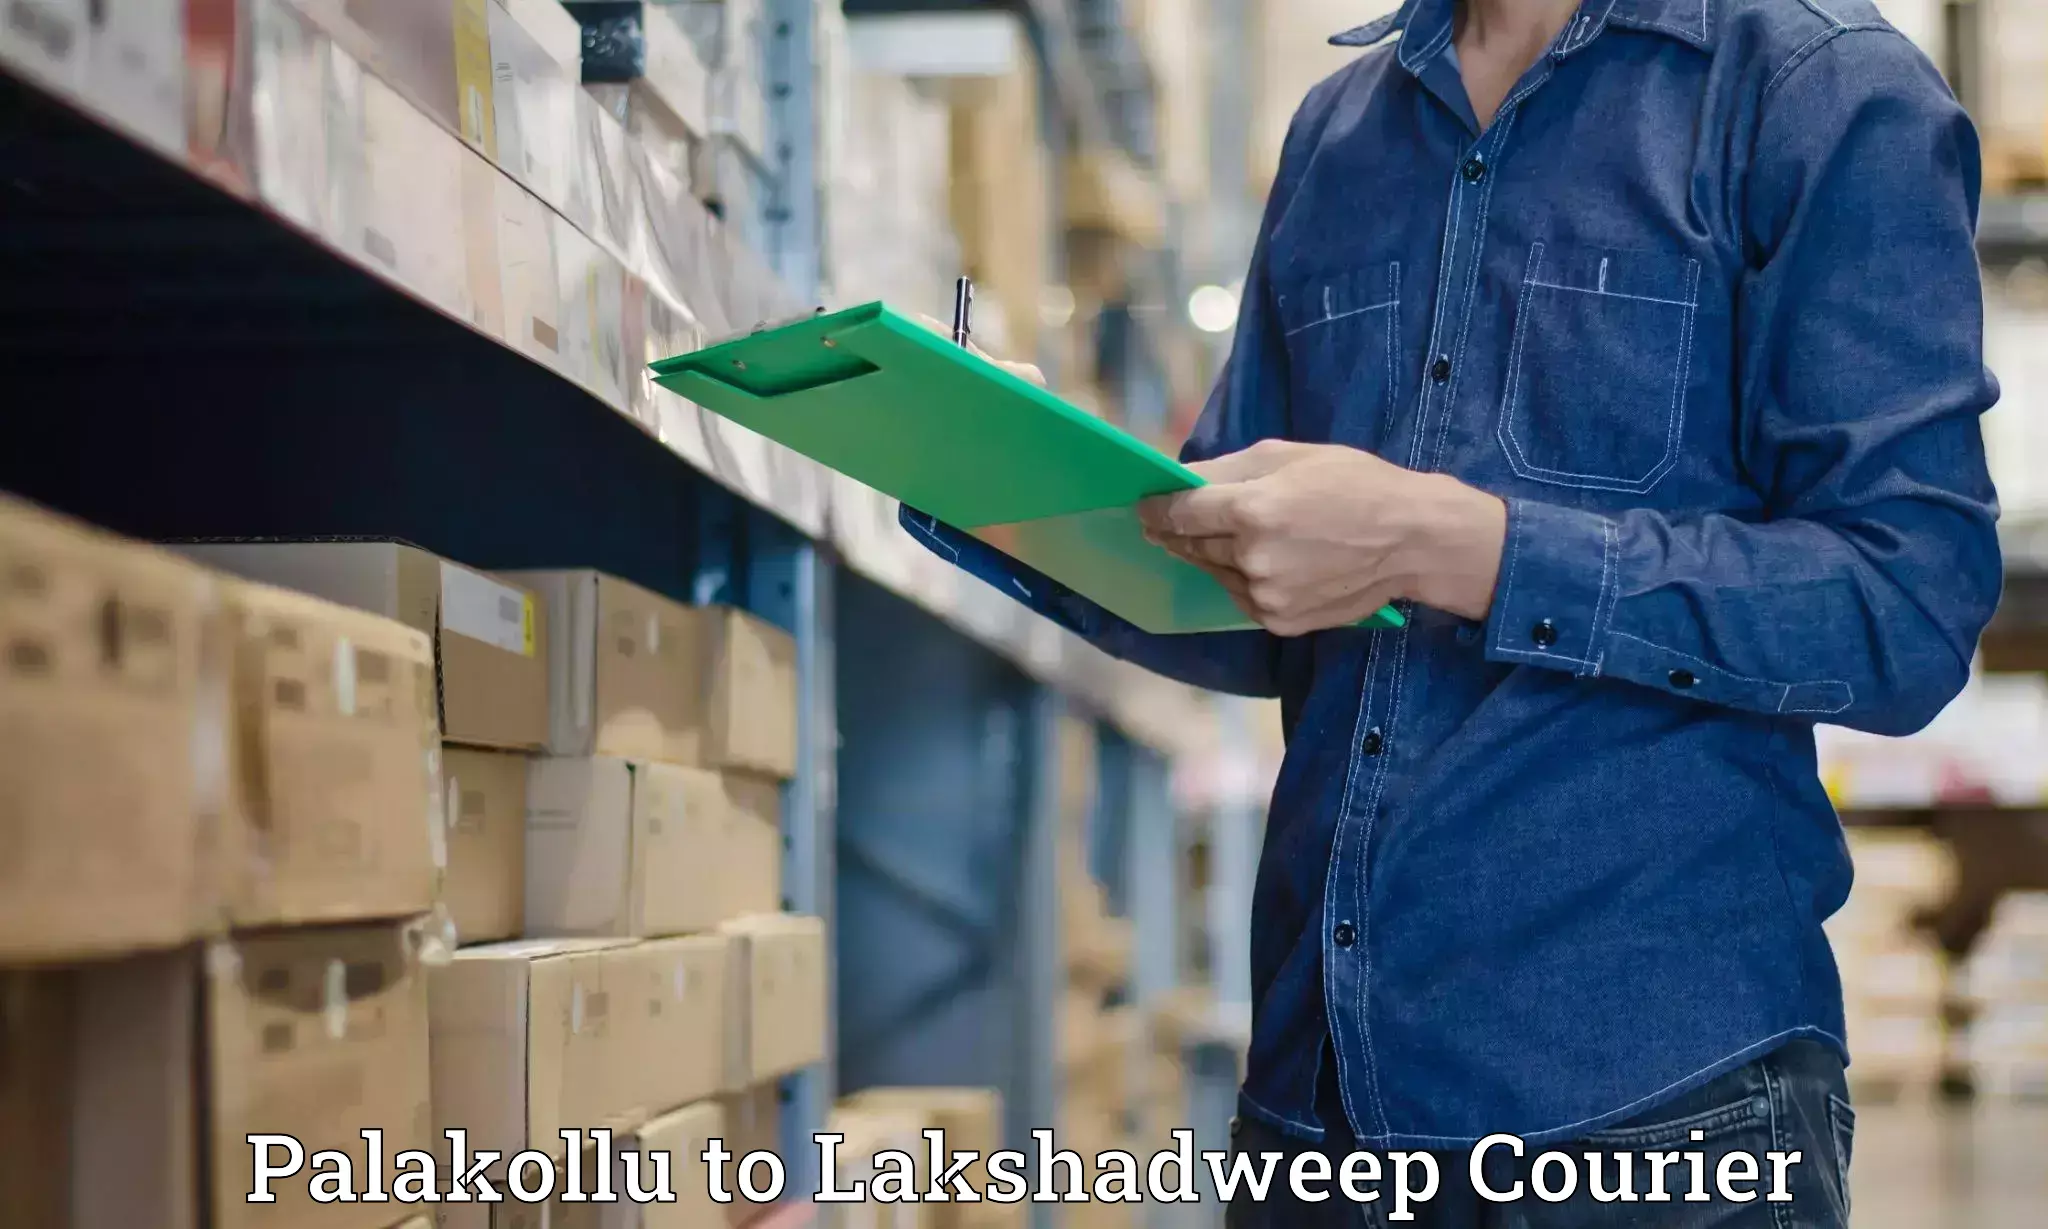 Expedited shipping solutions Palakollu to Lakshadweep